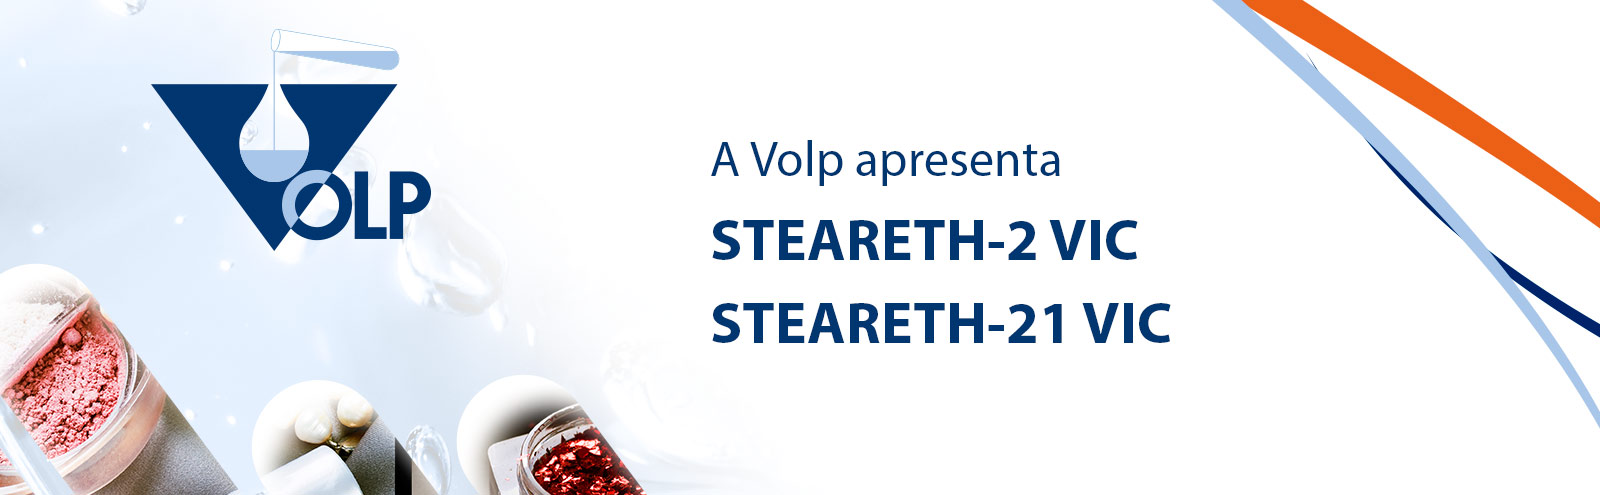 A Volp apresenta STEARETH-2 VIC e STEARETH-21 VIC